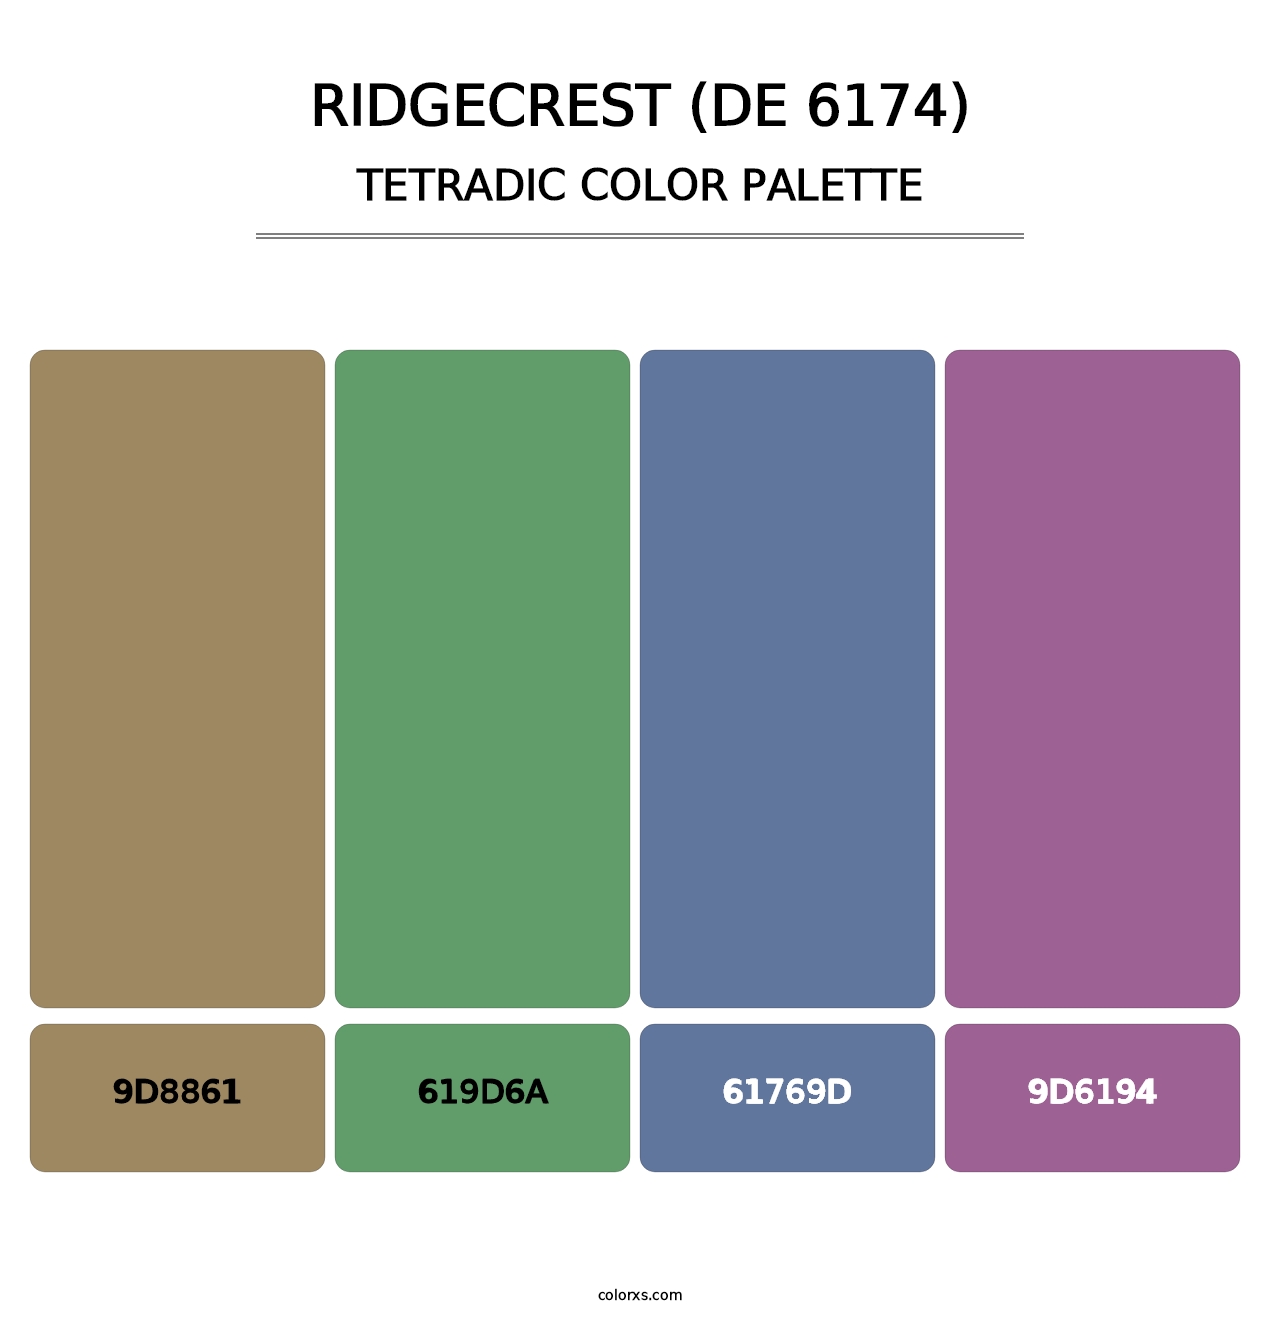 Ridgecrest (DE 6174) - Tetradic Color Palette